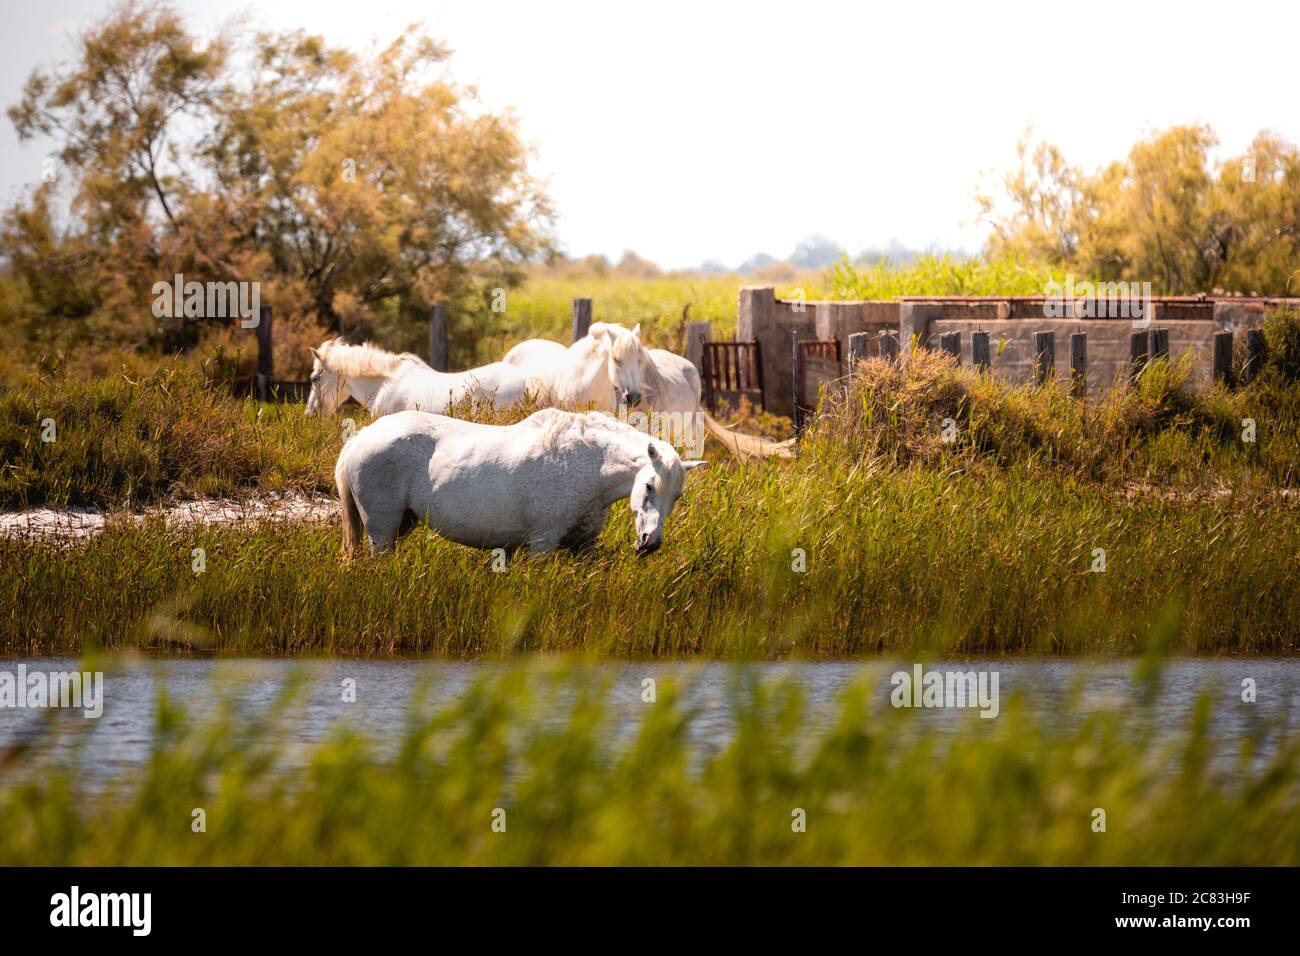 Nahaufnahme von drei weißen Camargue Pferden grasen in einem Sumpf in der Nähe eines Kanals, mit einem entfernten Baum im Hintergrund Stockfoto